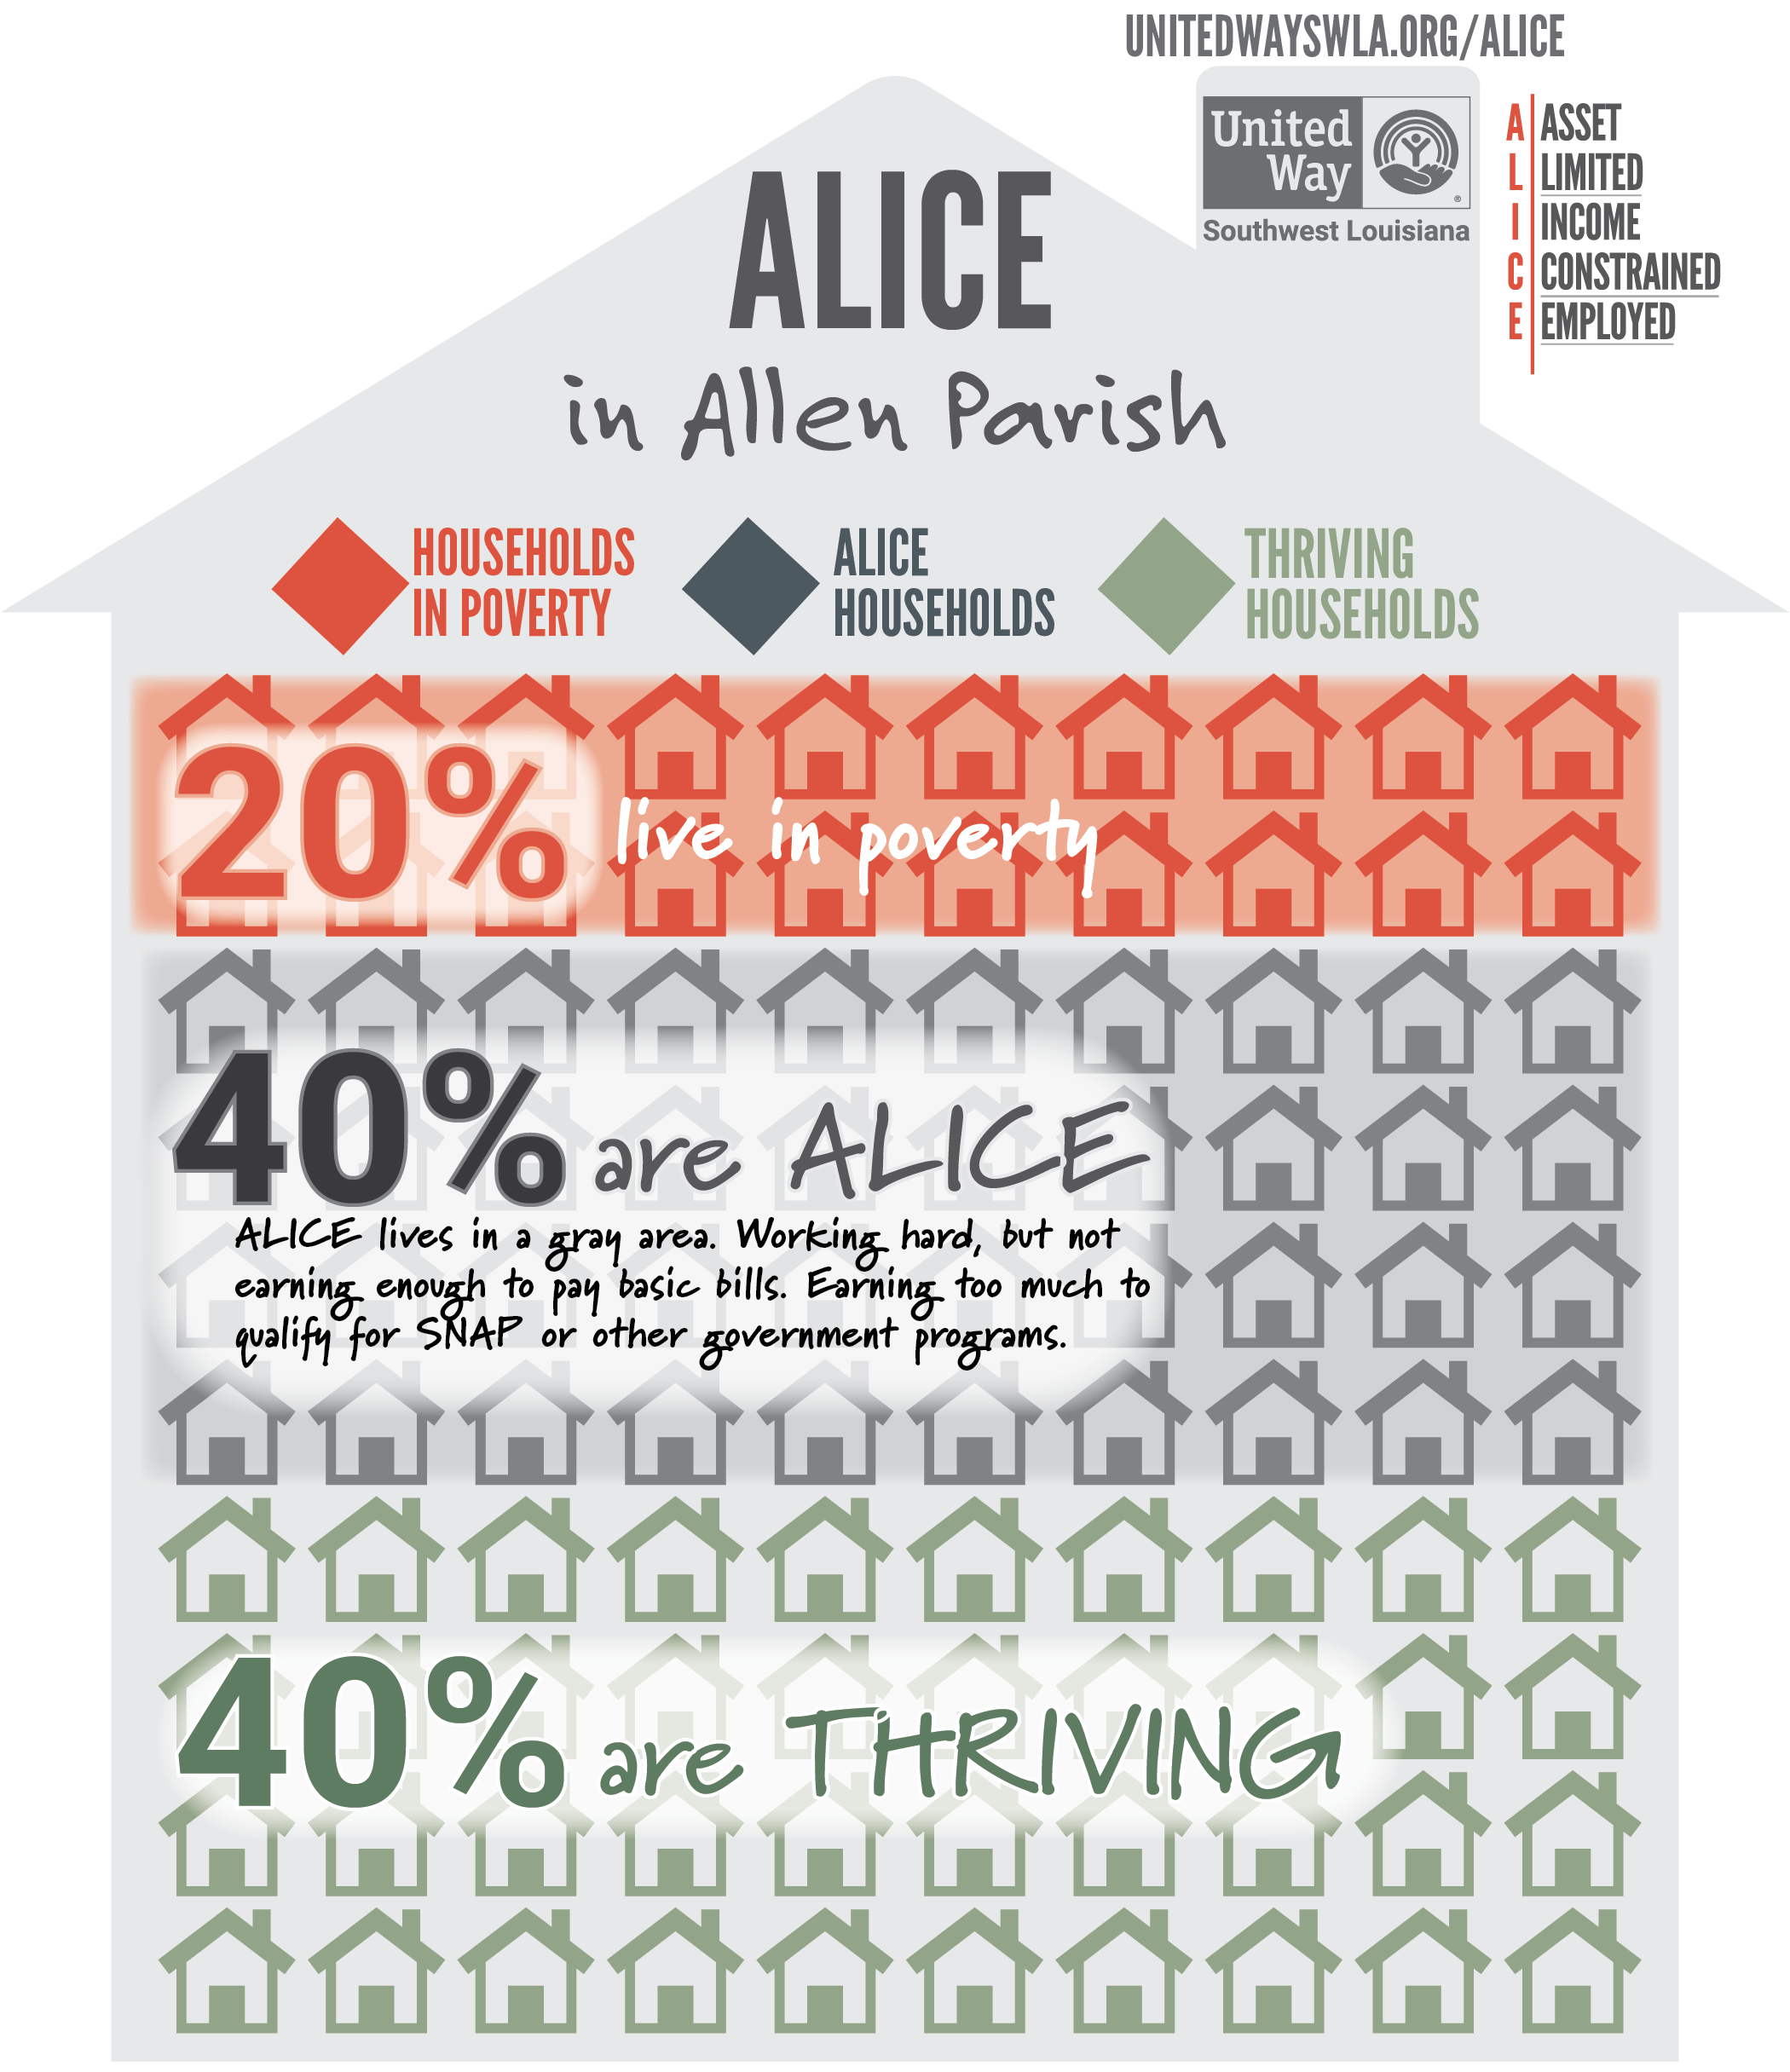 ALICE HOUSEHOLDS IN ALLEN PARISH